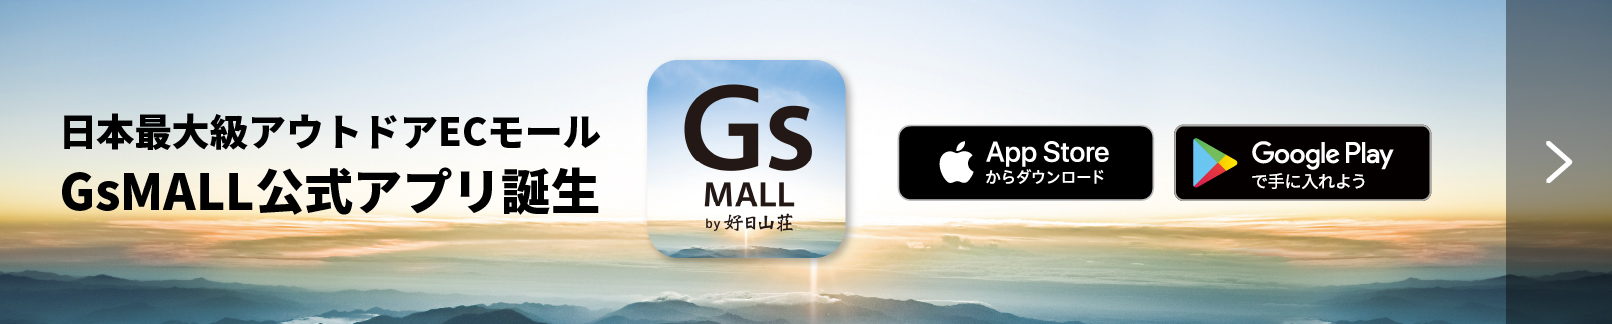 GsMALLアプリリリース